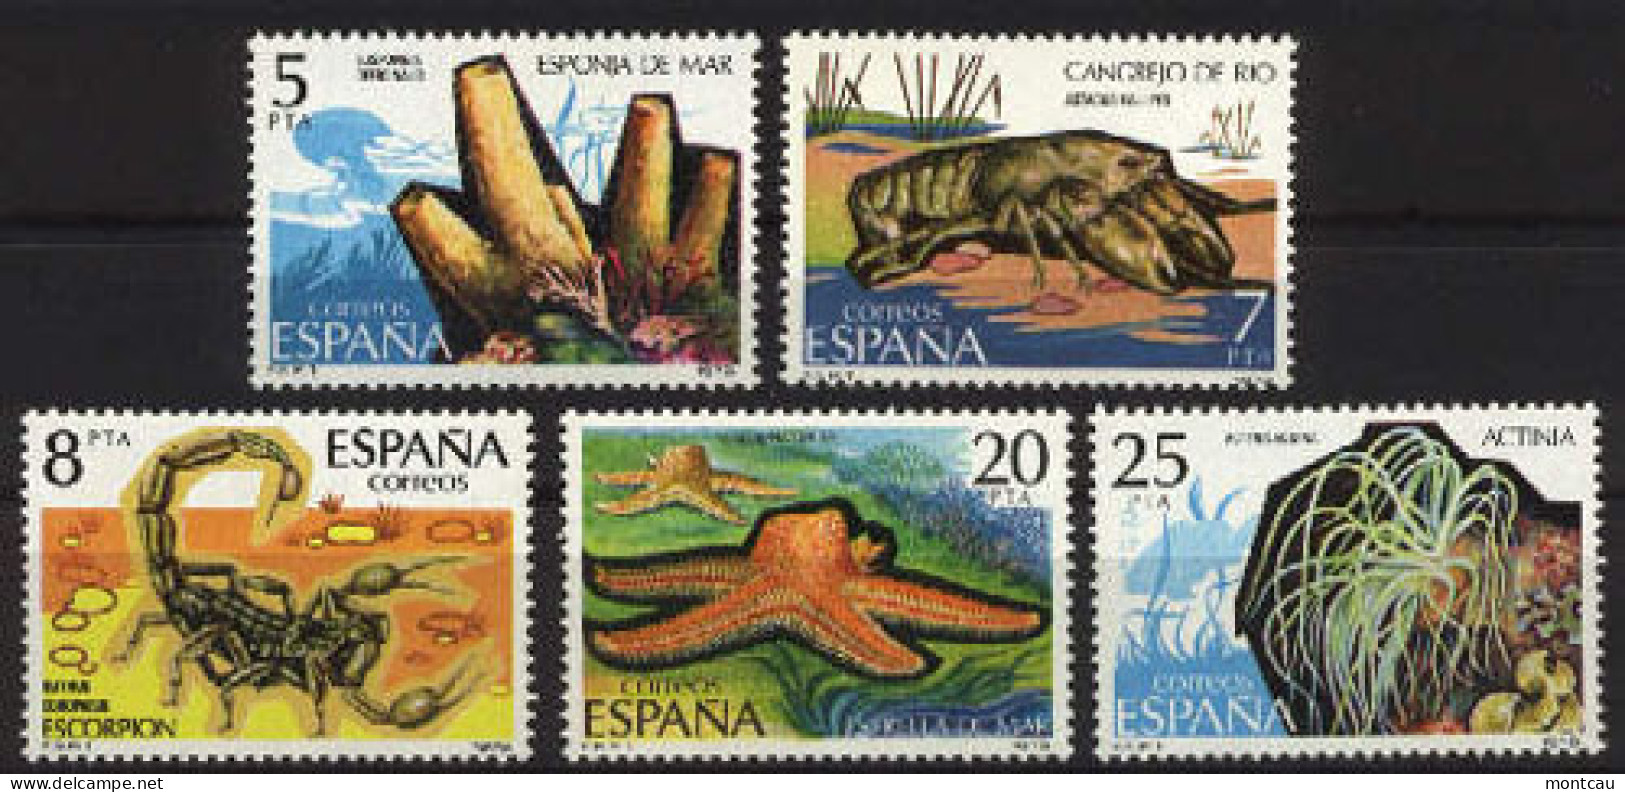 Spain. 1979. Invertebrados Ed 2531-35 (**) - Schalentiere